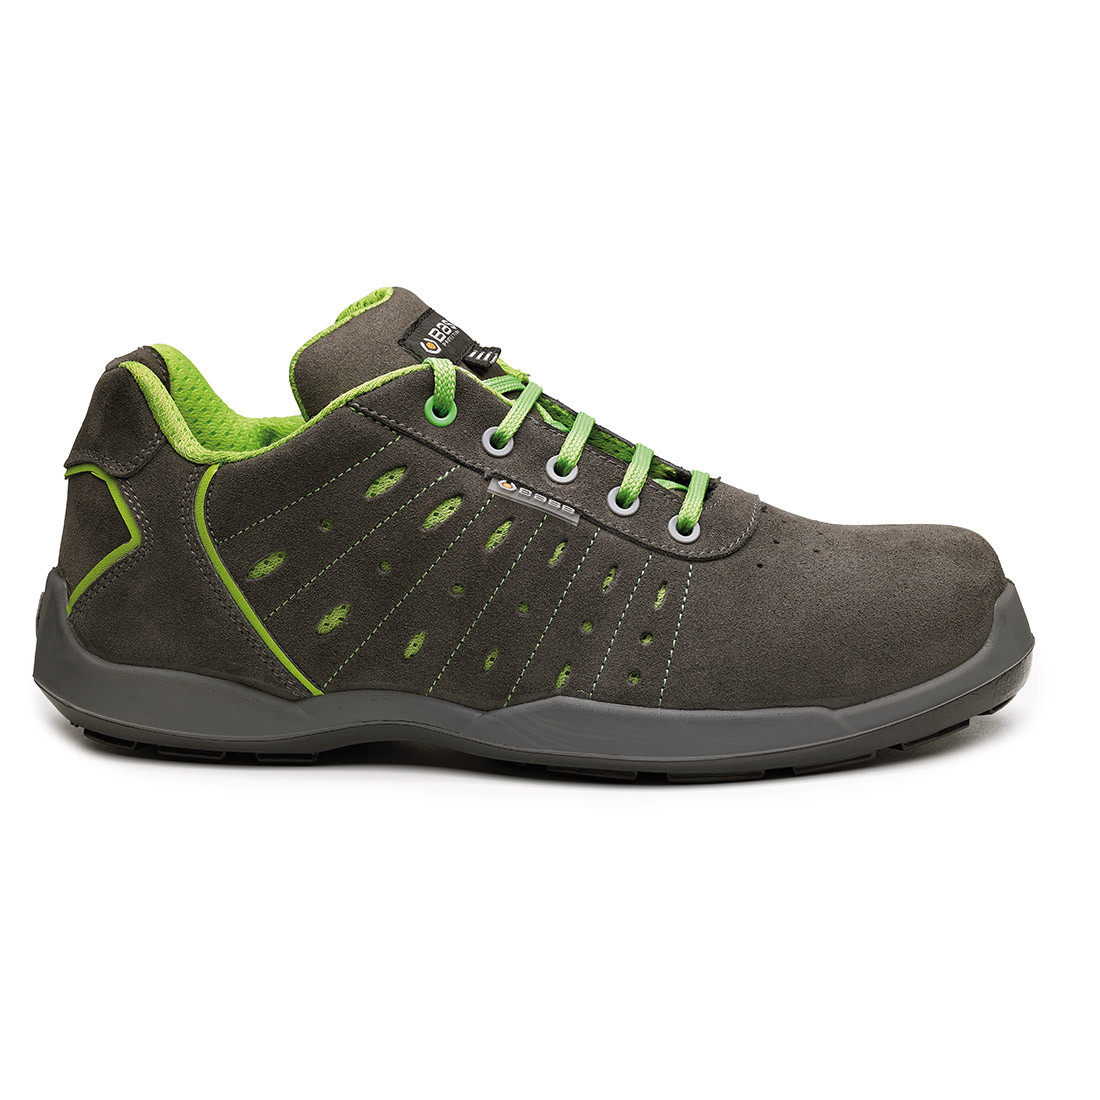 Pantofi Ace S1P SRC - Incaltaminte de protectie | Bocanci, Pantofi, Sandale, Cizme